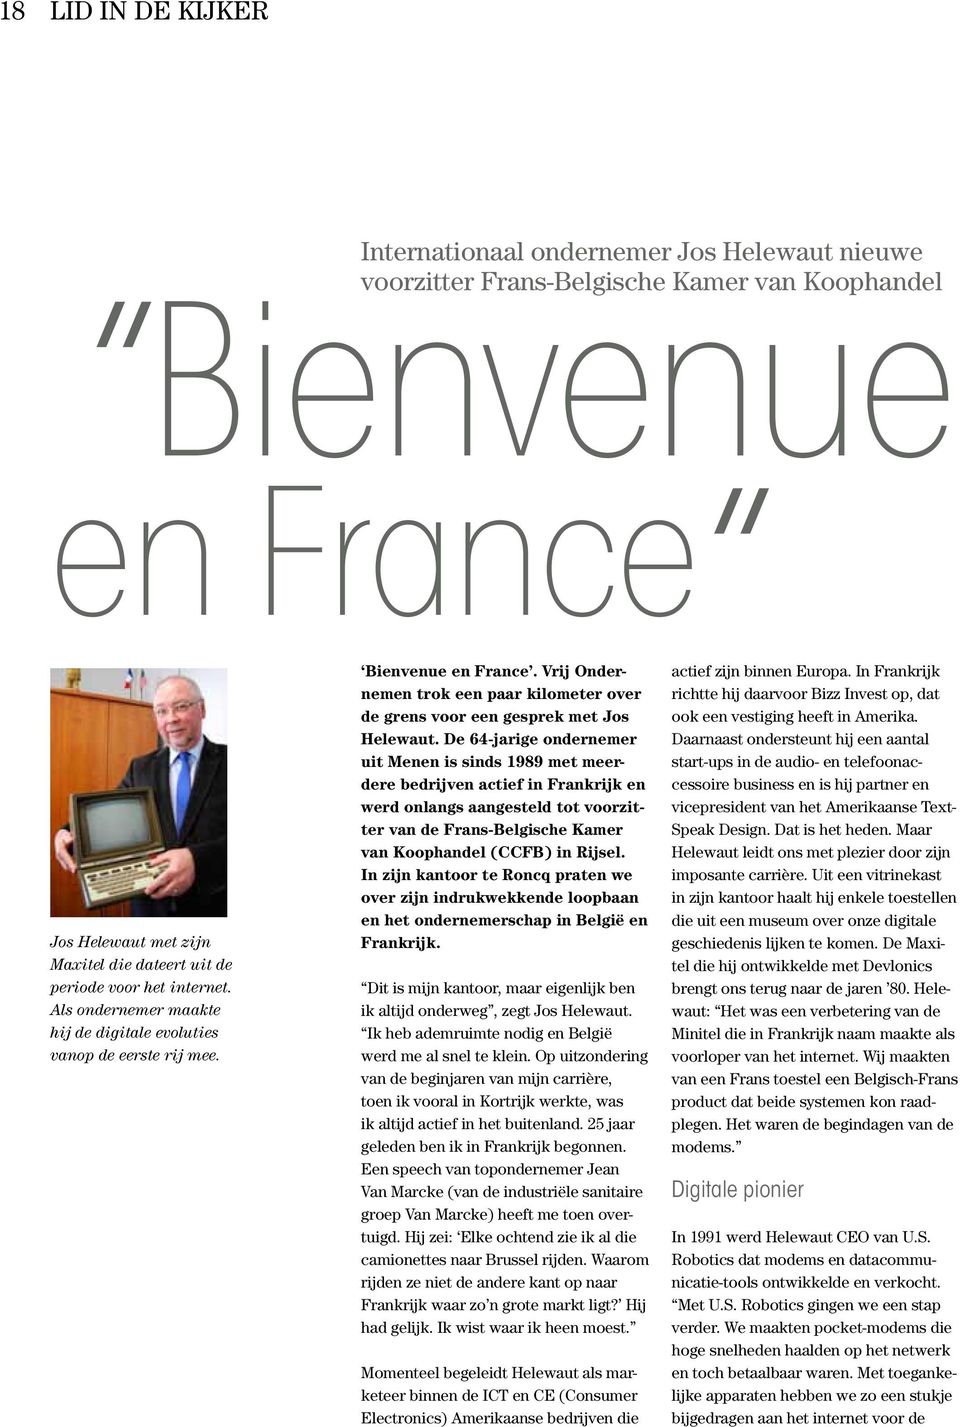 De 64-jarige ondernemer uit Menen is sinds 1989 met meerdere bedrijven actief in Frankrijk en werd onlangs aangesteld tot voorzitter van de Frans-Belgische Kamer van Koophandel (CCFB) in Rijsel.